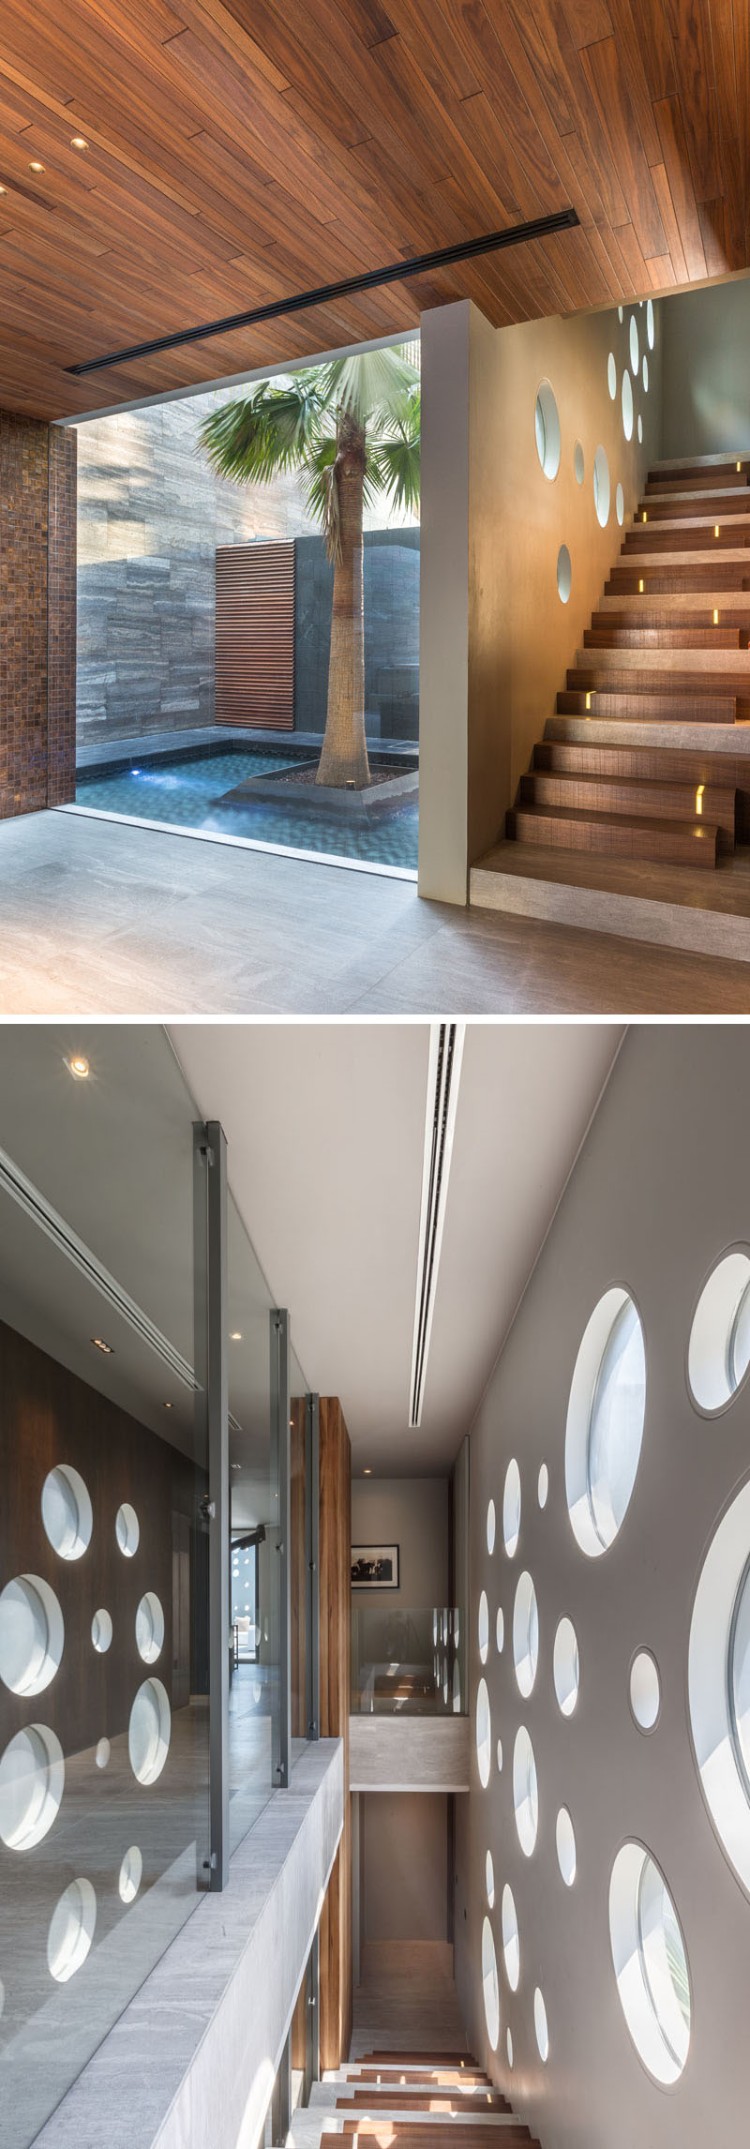 claustra escalier design perforé maison architecte bois béton